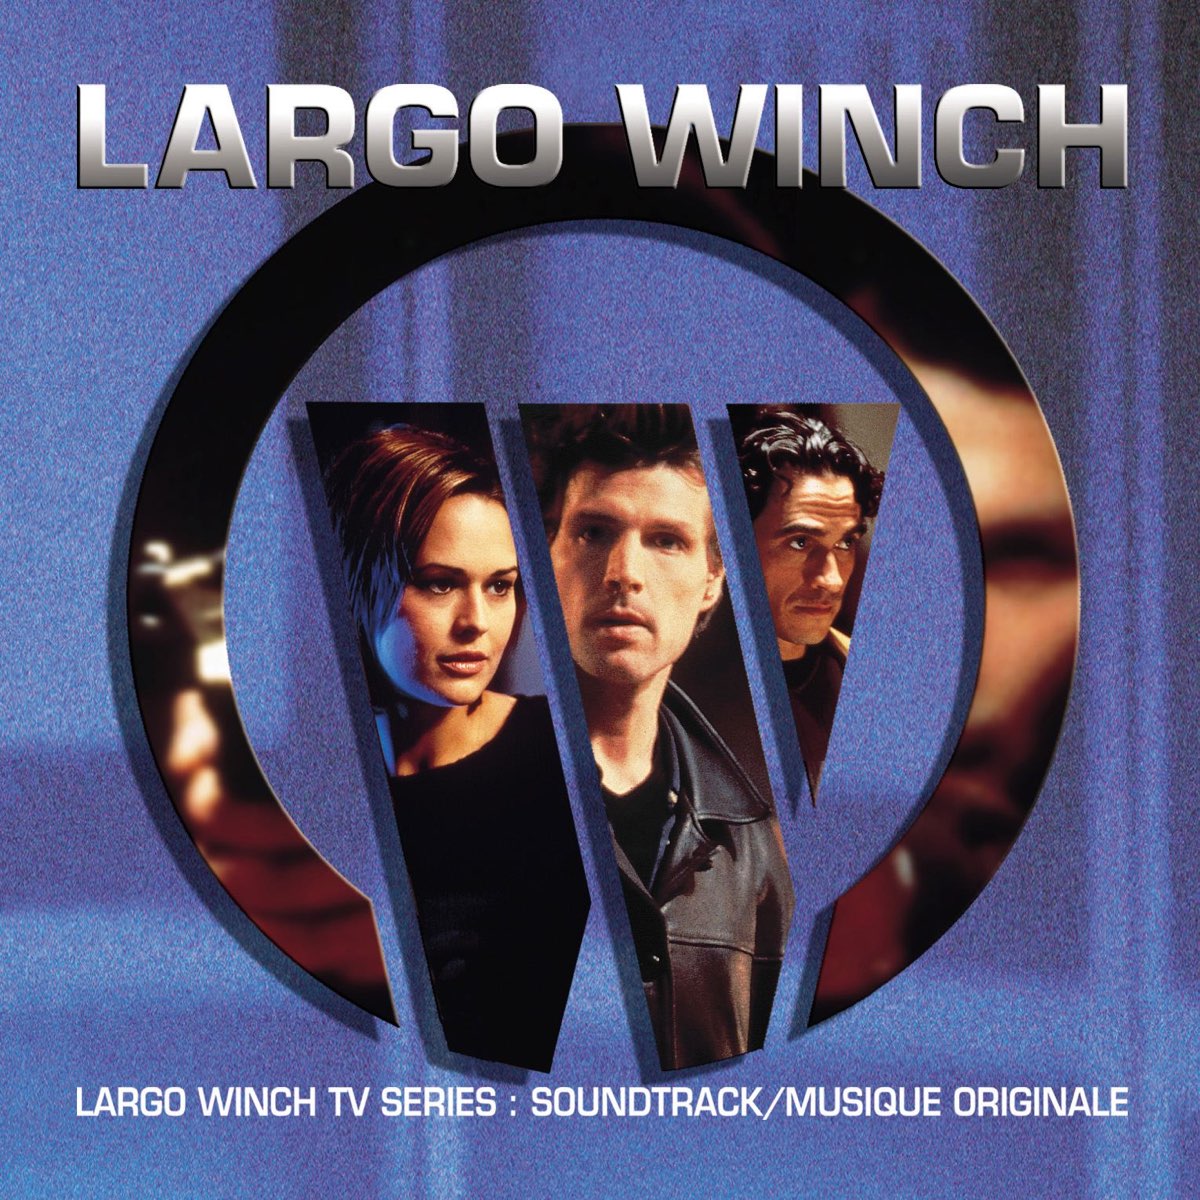 Largo Winch (Soundtrack of the TV Show / Bande originale de la série télé)  – Album par Michel Colombier – Apple Music